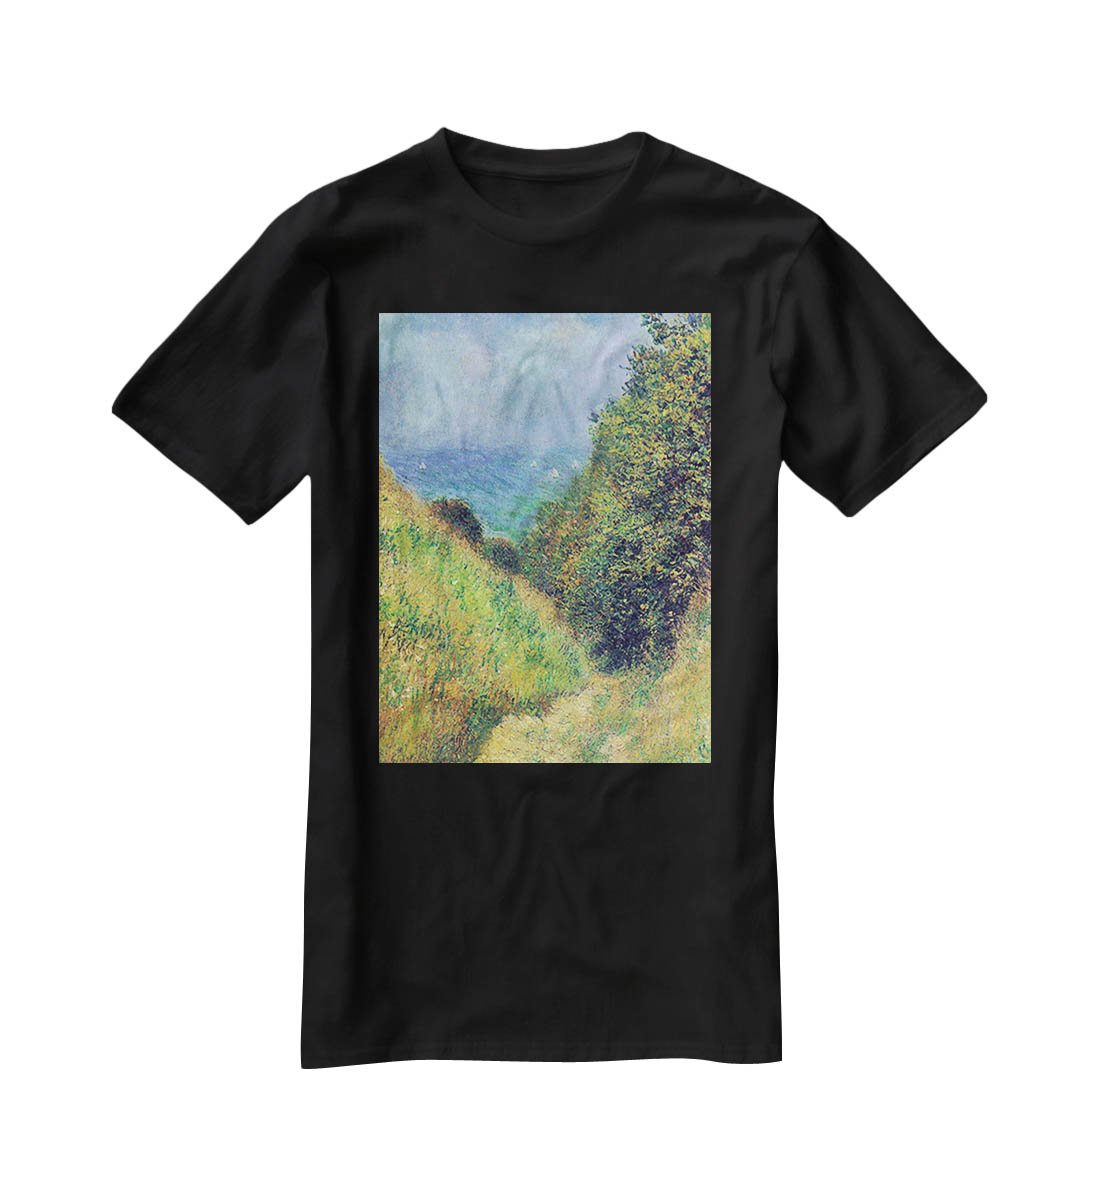 Pourville 2 by Monet T-Shirt - Canvas Art Rocks - 1